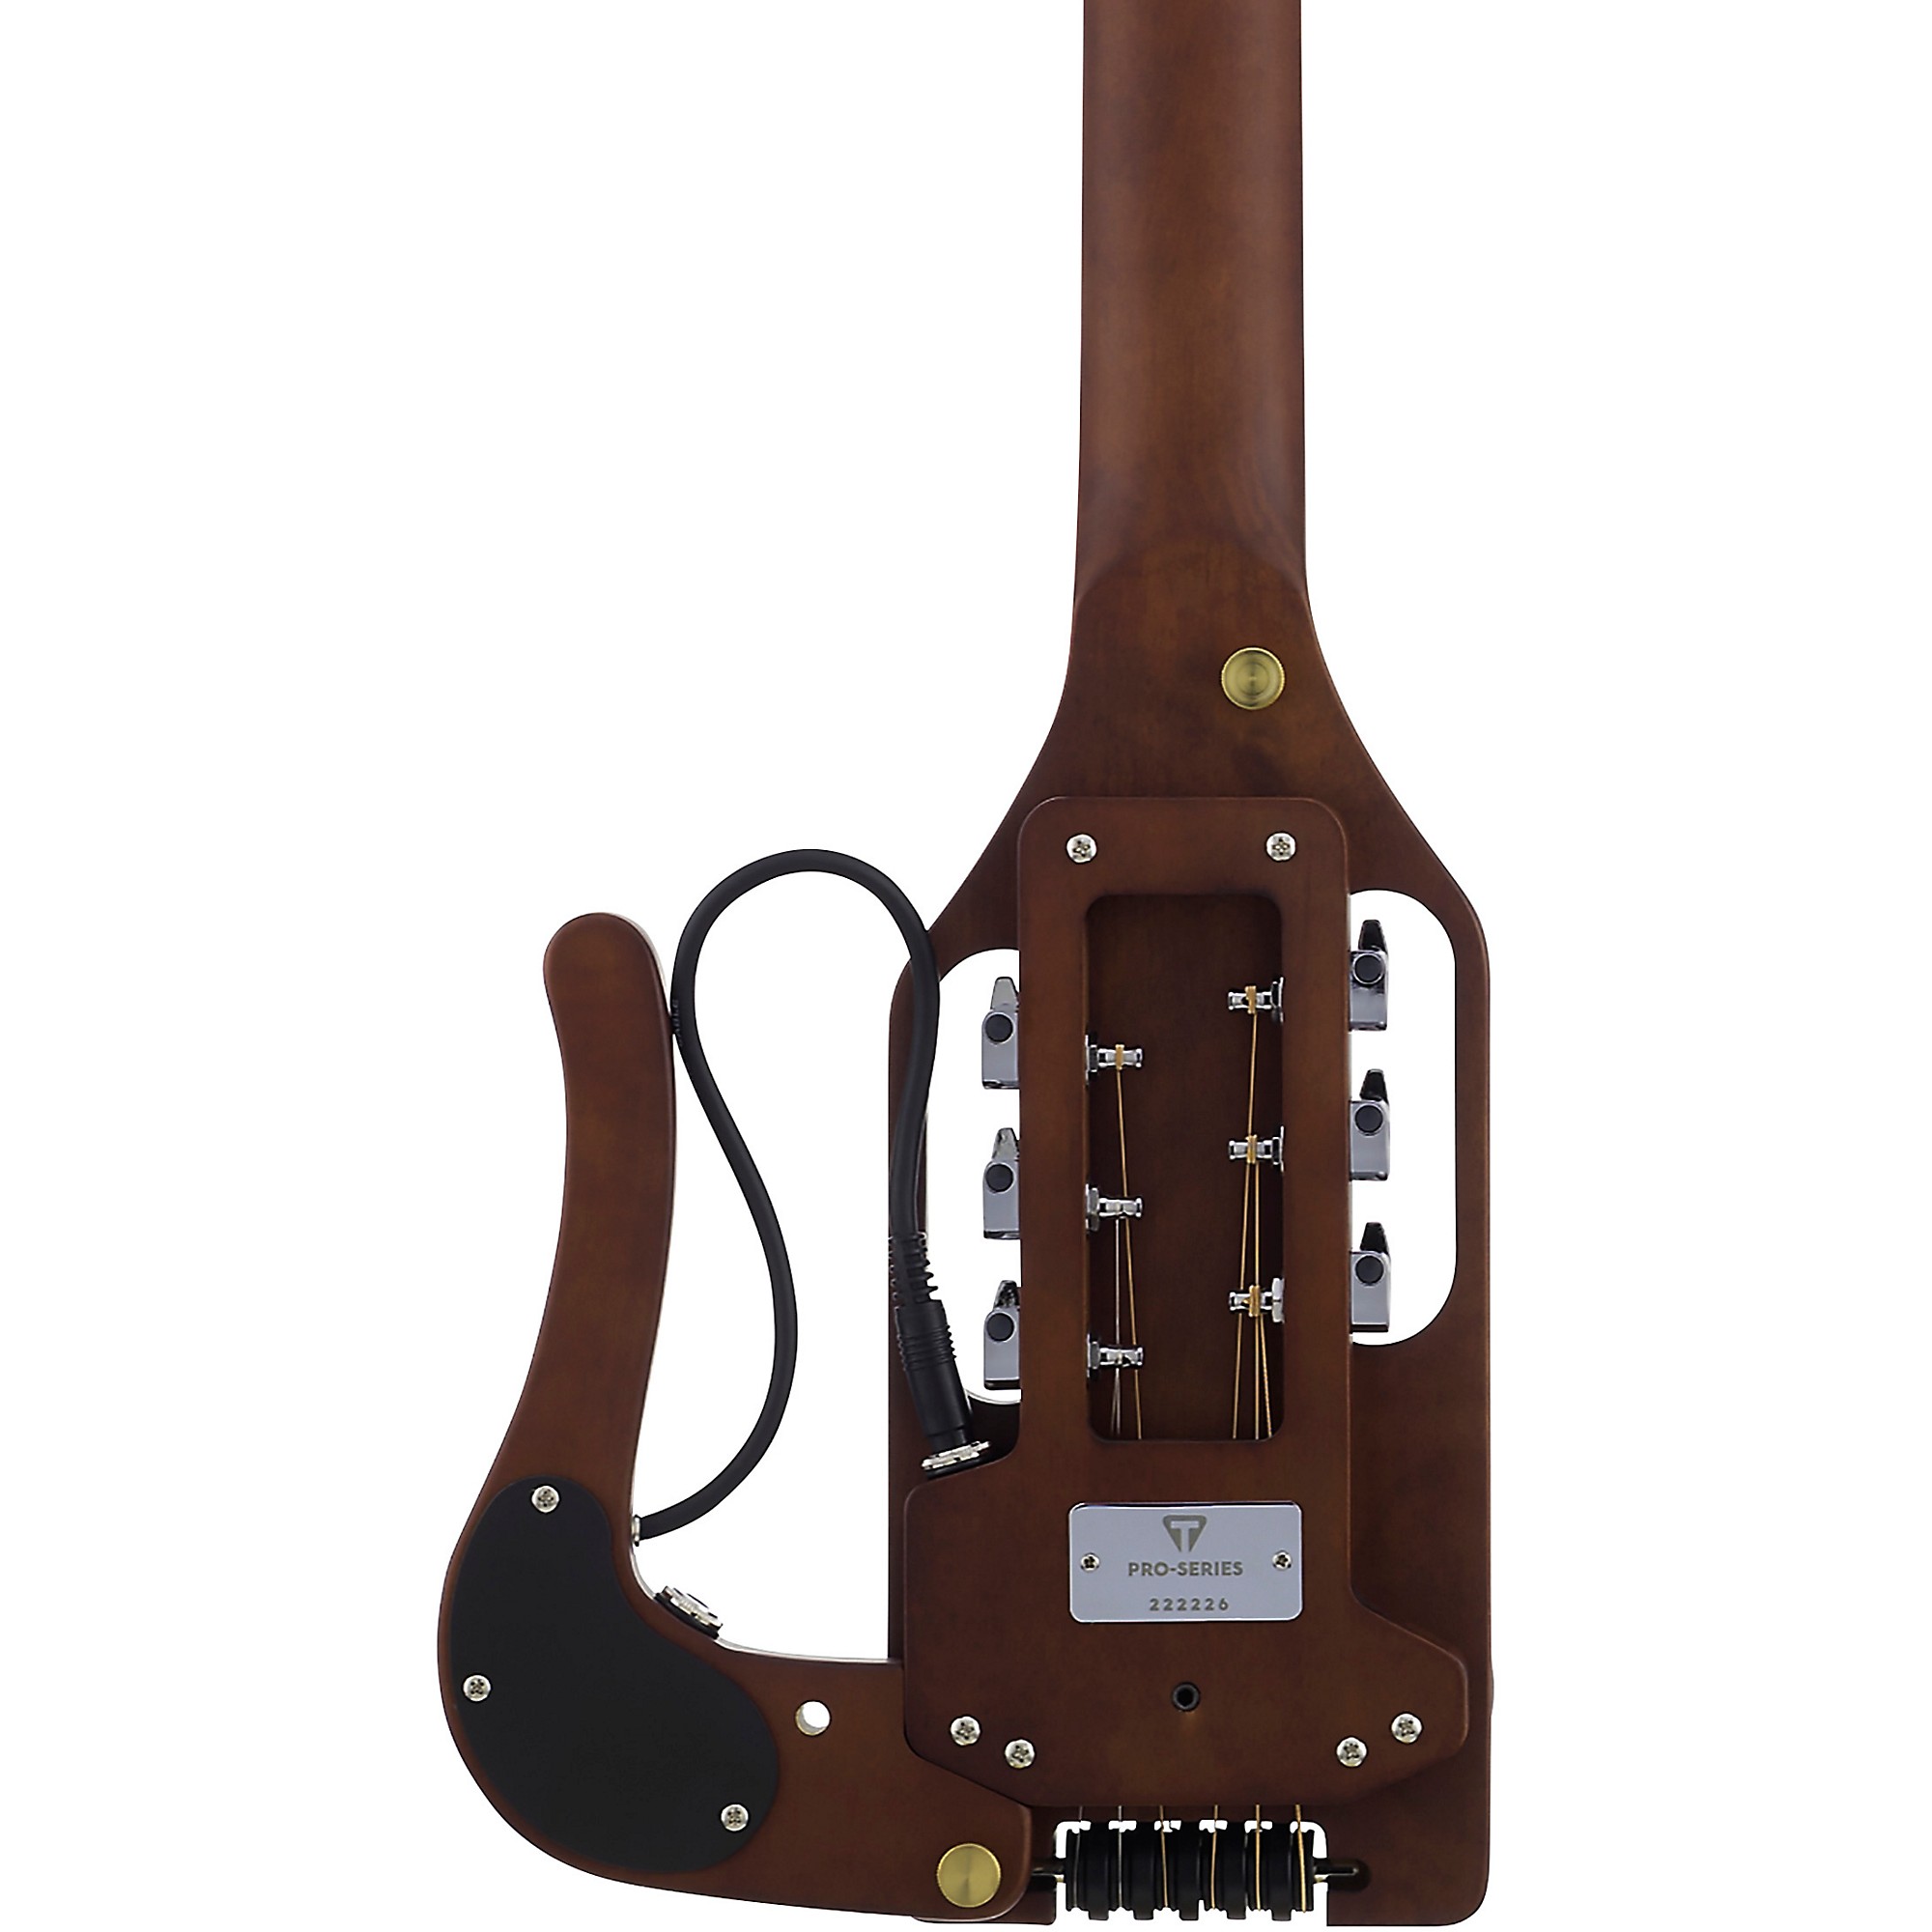 Гибридная акустико-электрическая гитара Traveler Guitar Pro-Series, античный коричневый цвет